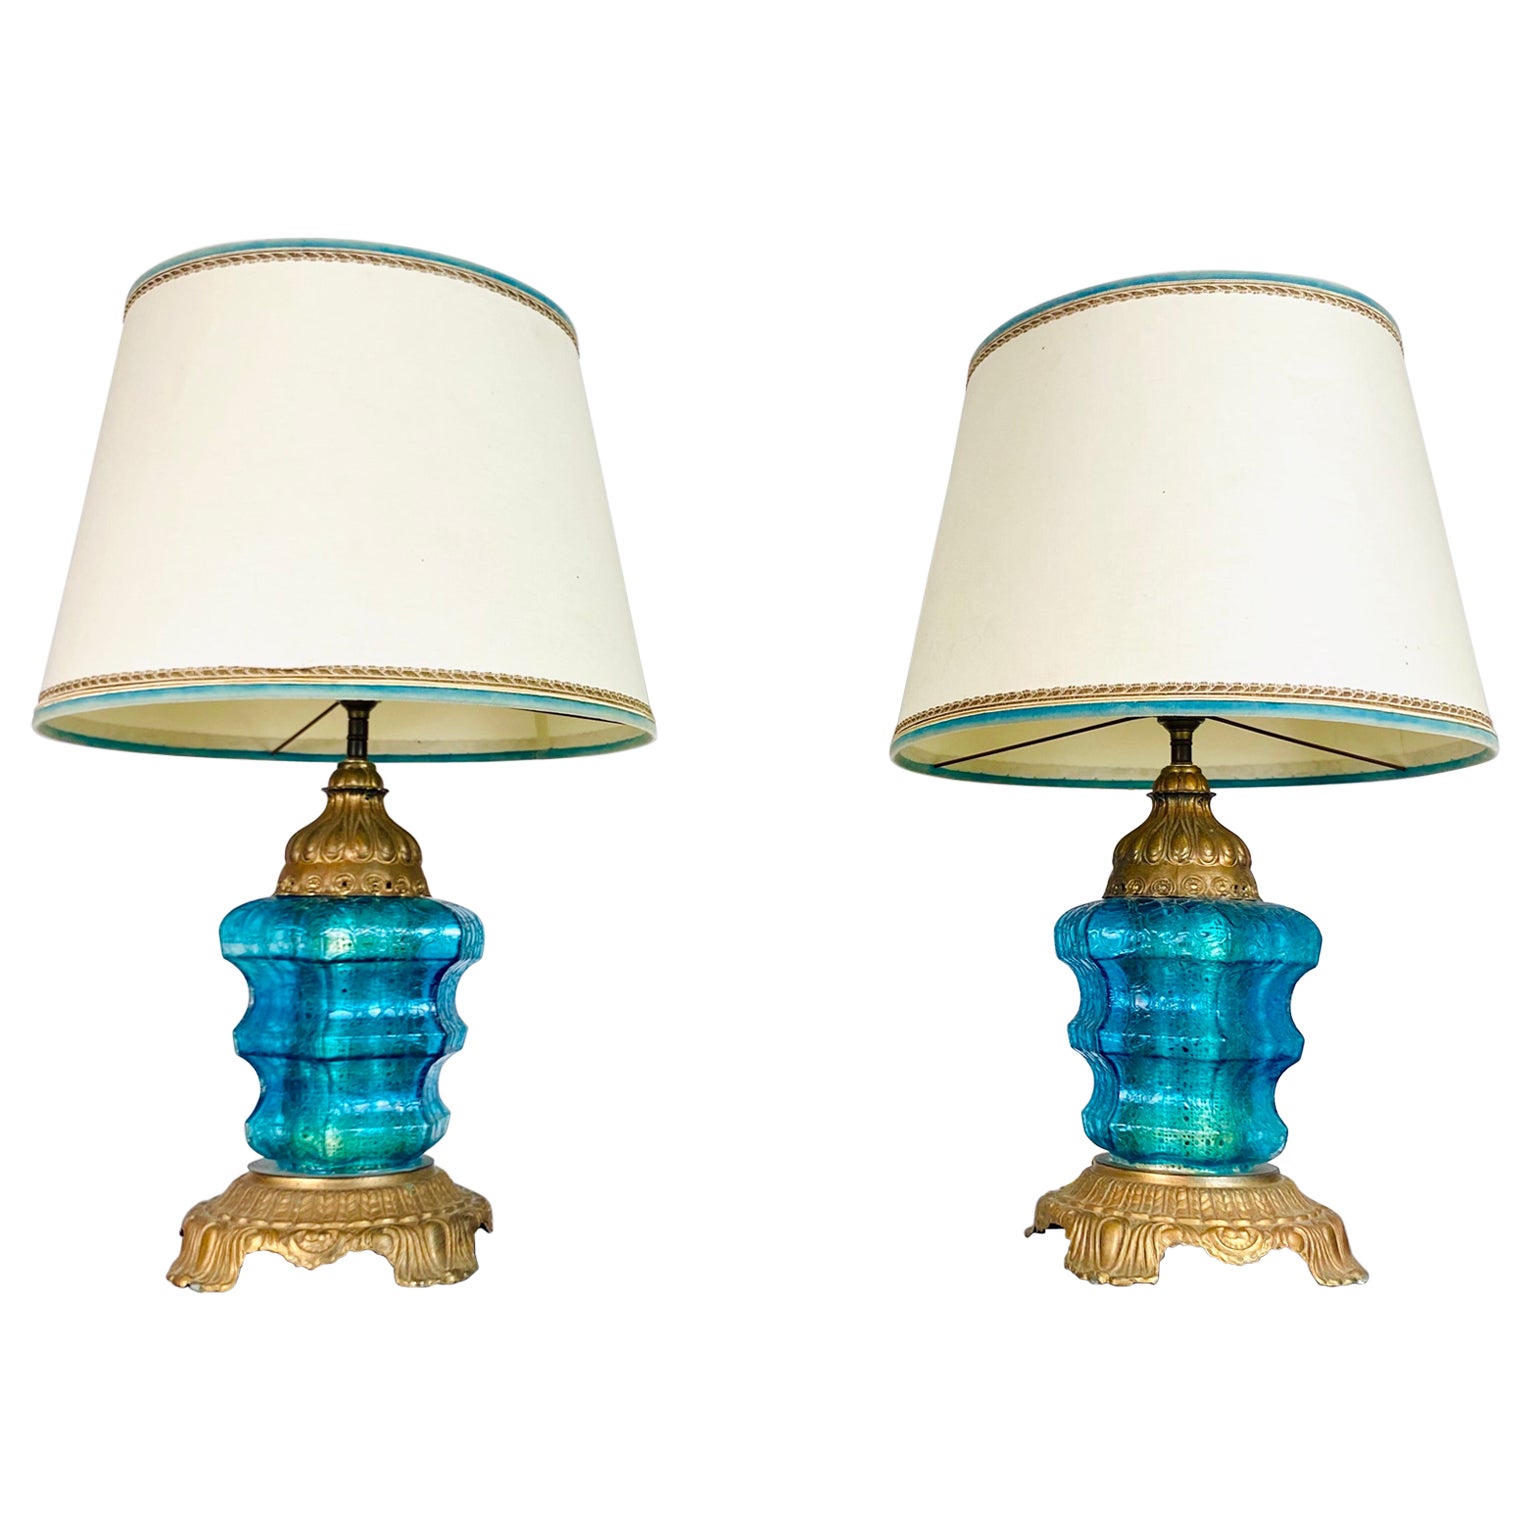 Magnifique paire de lampes en verre de Murano bleu - années 1970